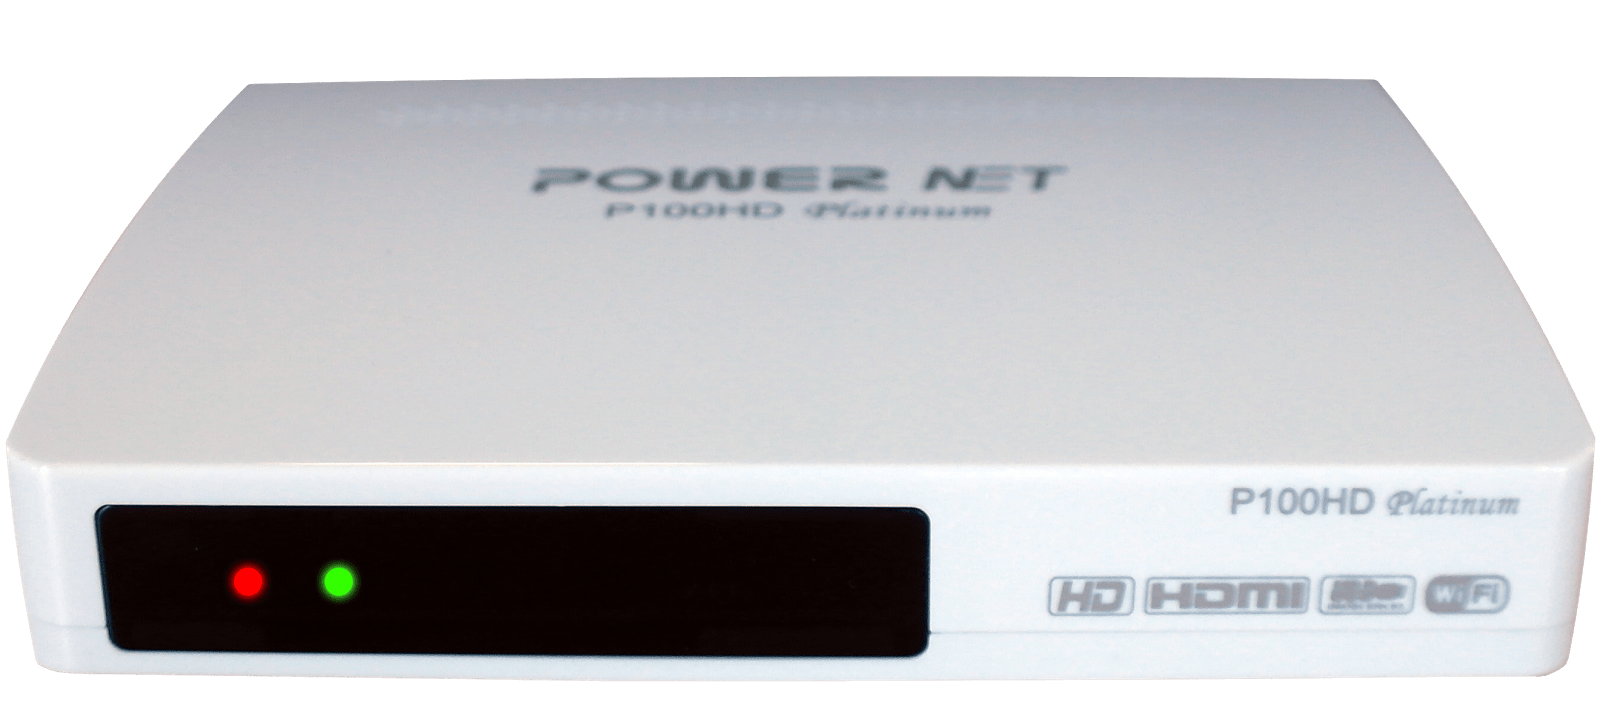 Atualização nova Megabox Powernet P100 HD Platinum - Novembro 2016